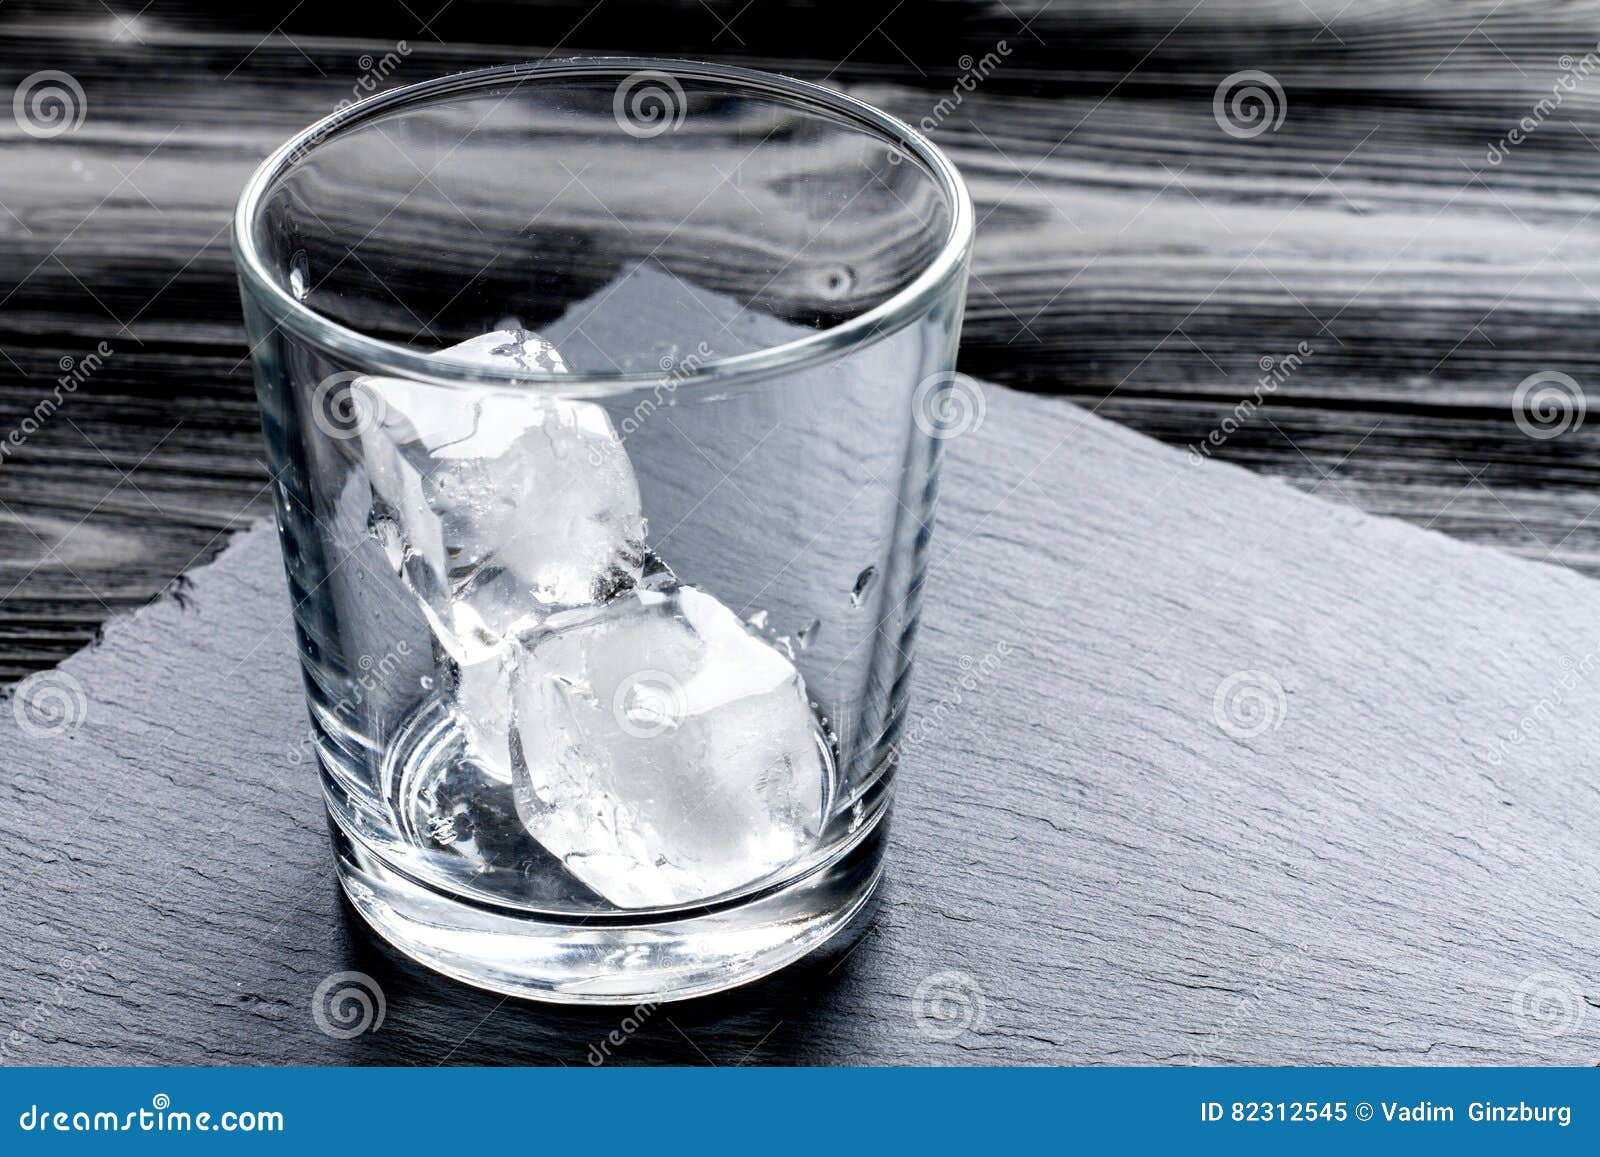 Песня давай тащи пустой стакан. Пустой стакан со льдом. Стеклянный стакан со льдом. Бокал с ледяными трещинами. Лед в стакане разбитом.